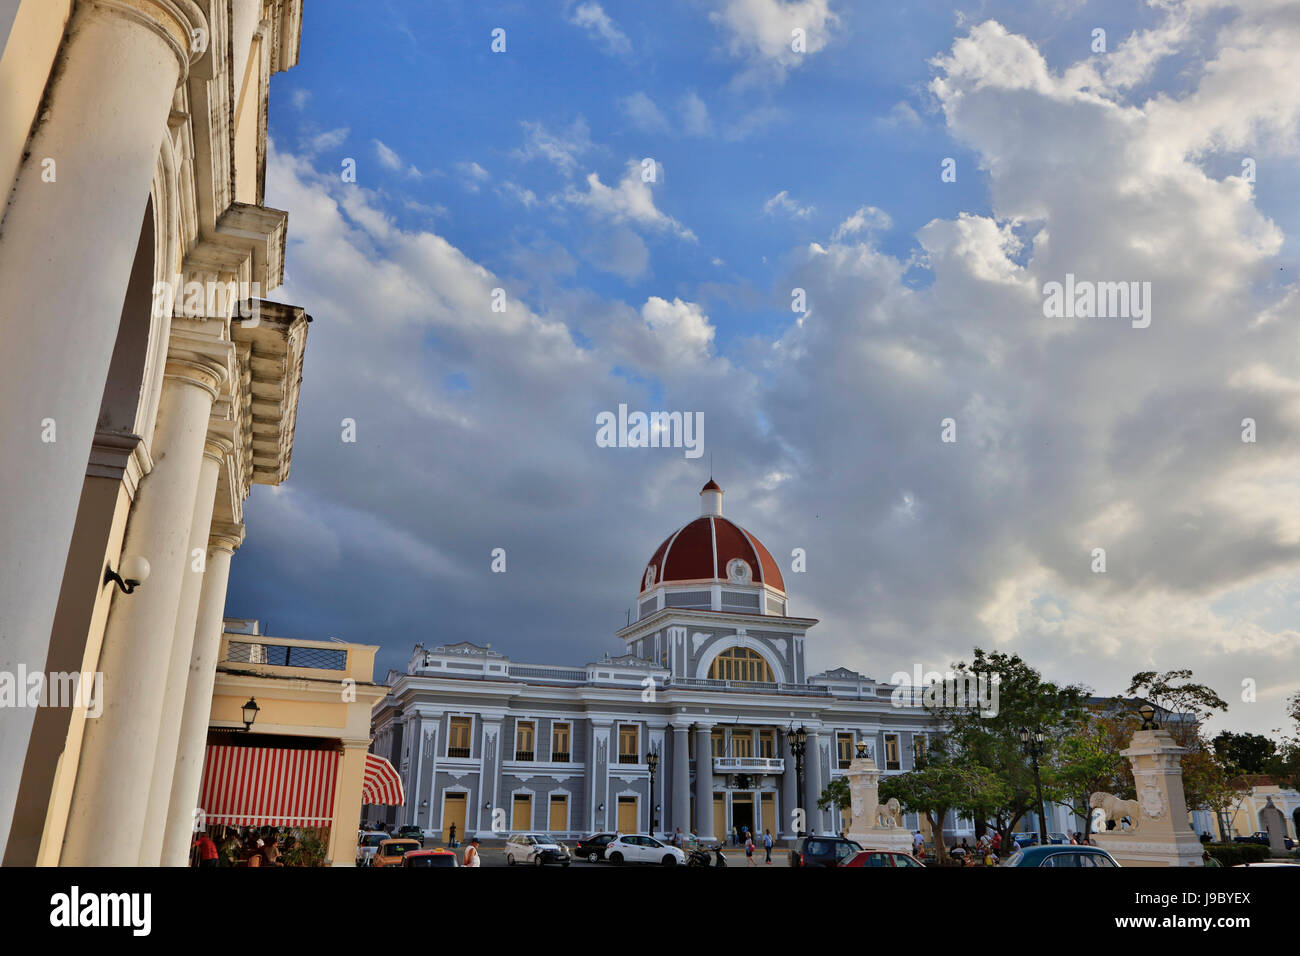 The PALACIO DE GOBIERNO or government palace is located on the PARQUE JOSE MARTI - CIENFUEGOS, CUBA Stock Photo